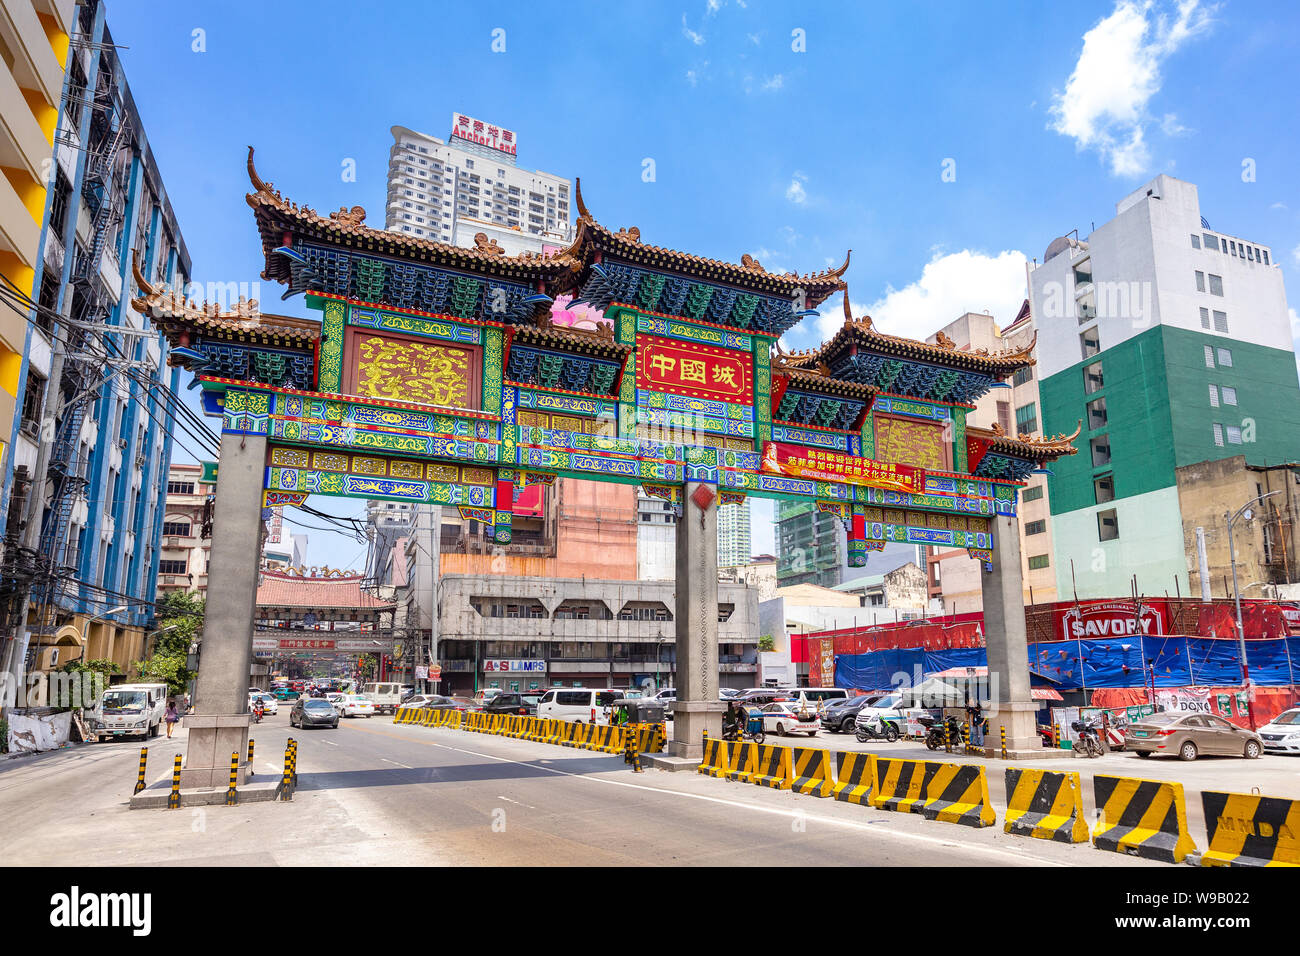 Manila, Philippinen - April 8, 2019: Die größte Chinatown Bogen der Welt in Manila, die am 23. Juni 2015 eingeweiht wurde. Stockfoto